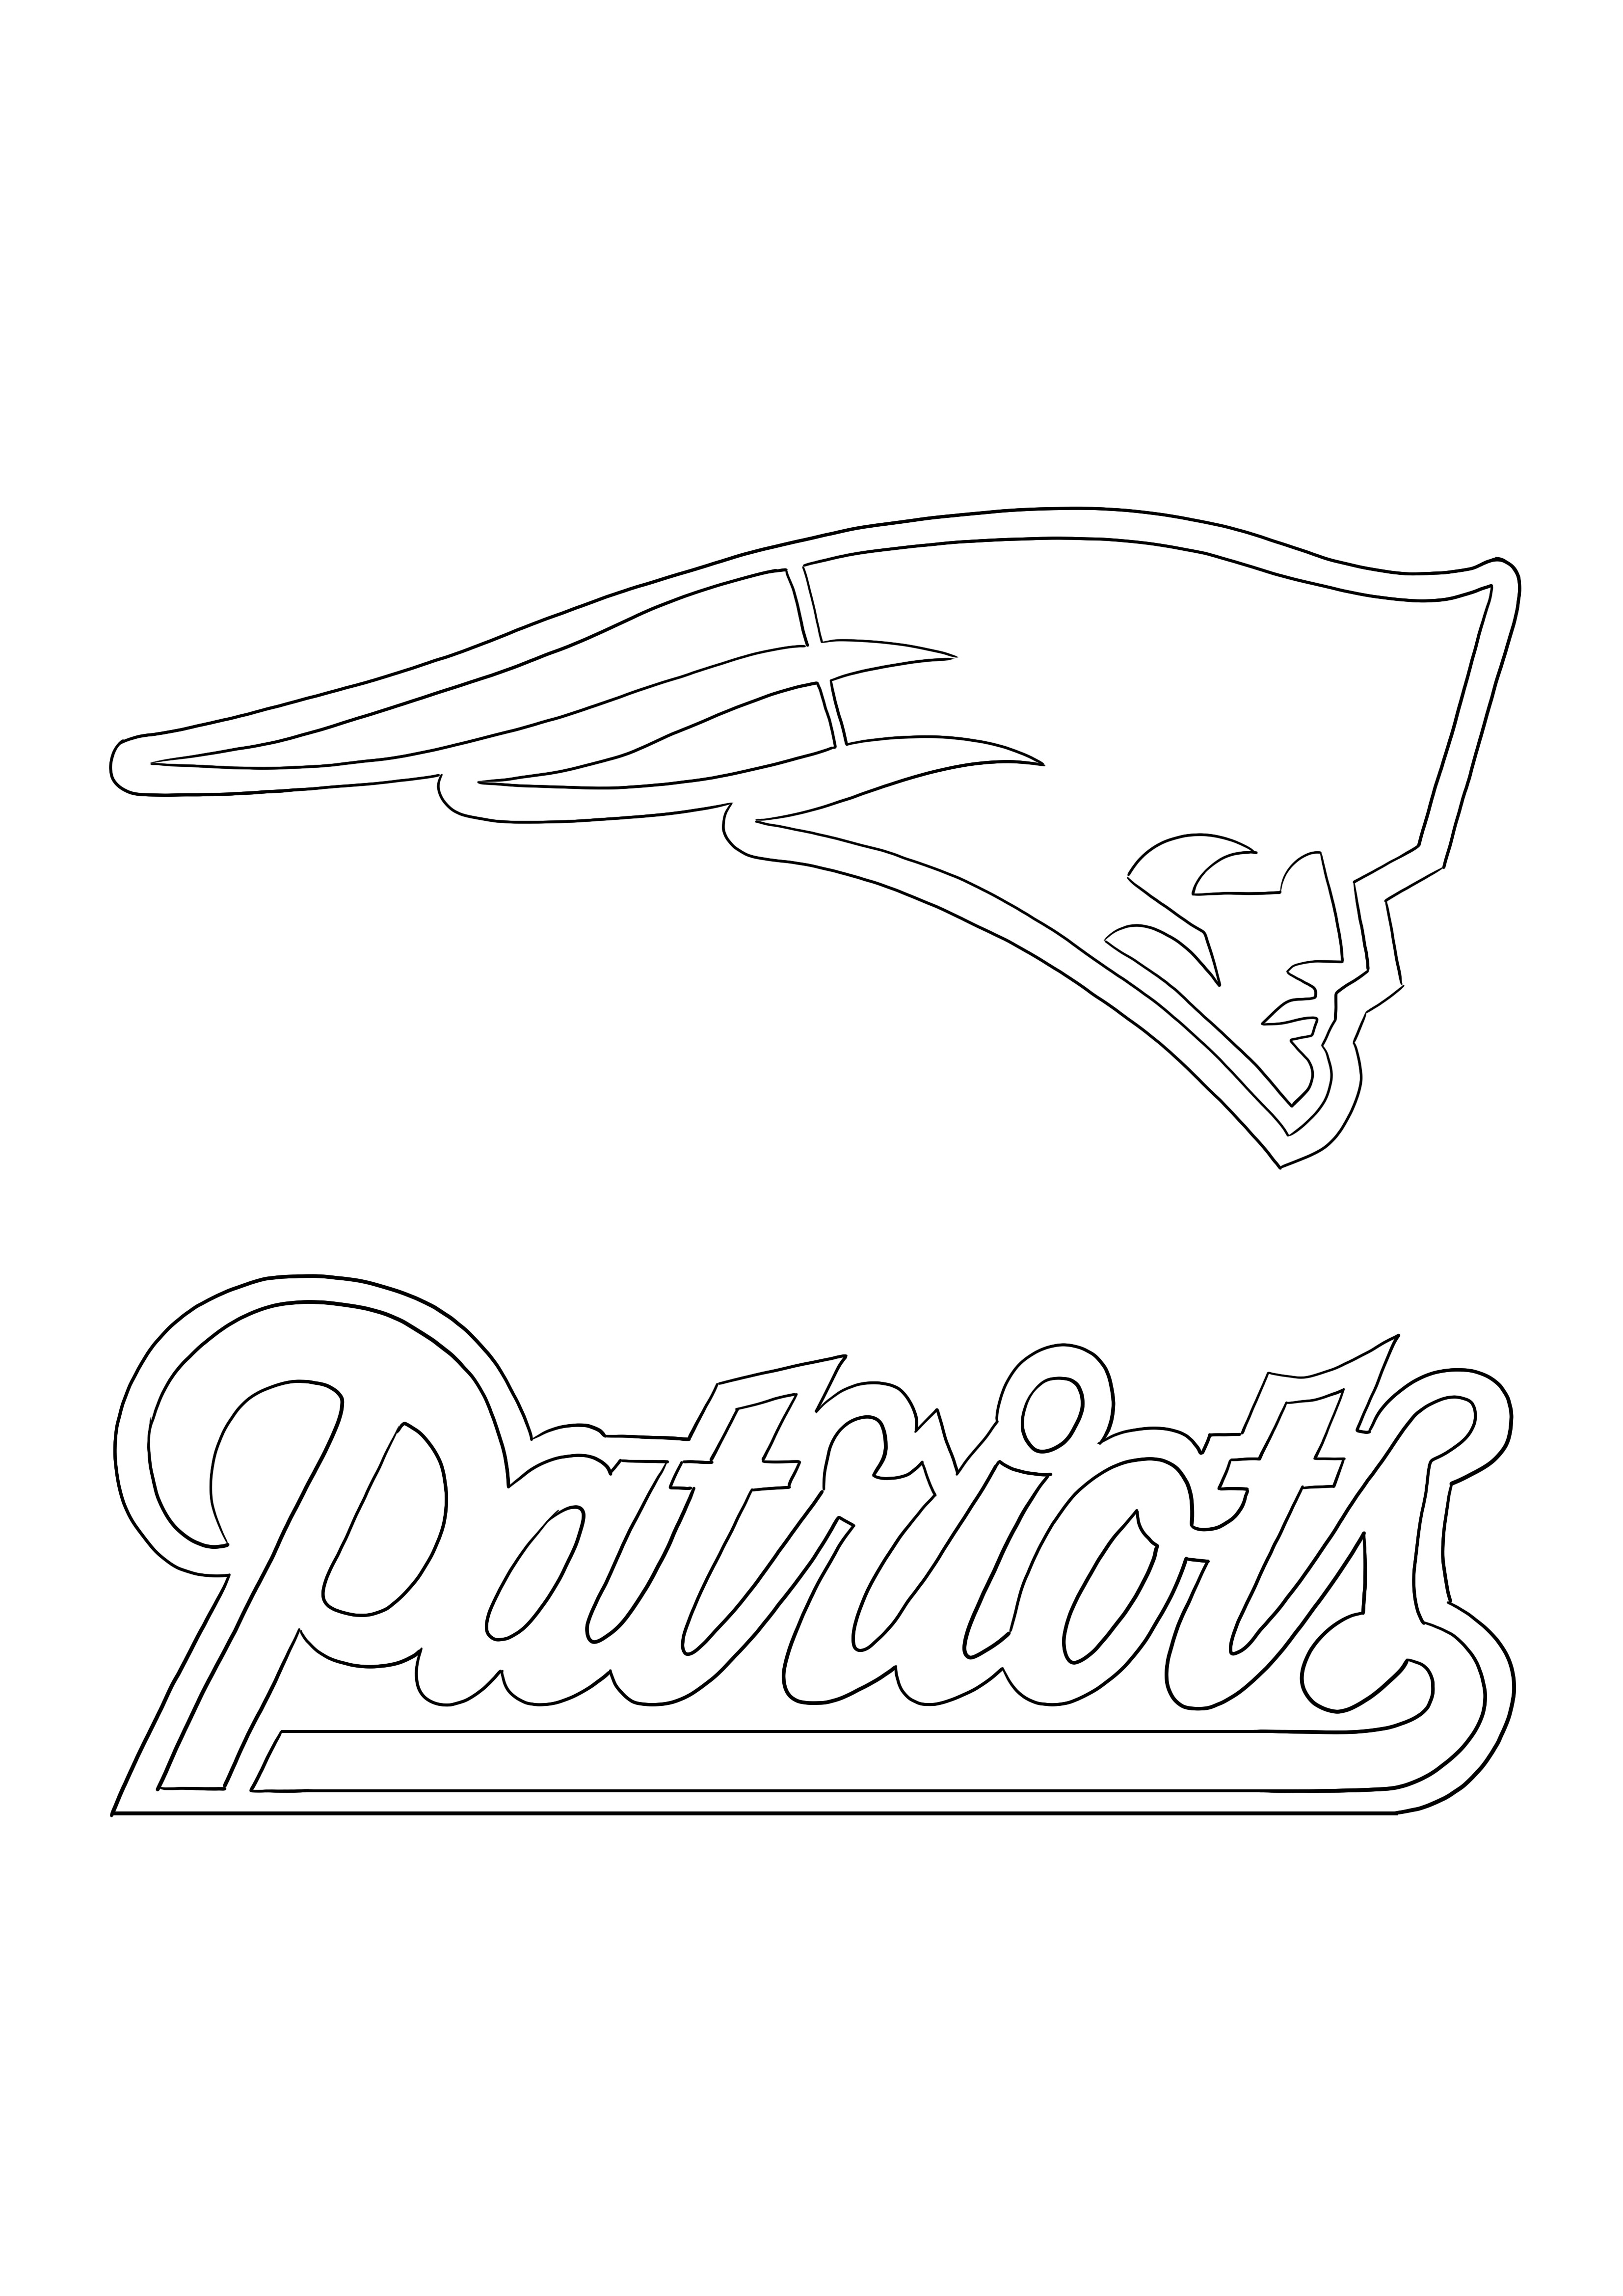 Logo de Patriotas para colorear y descargar gratis